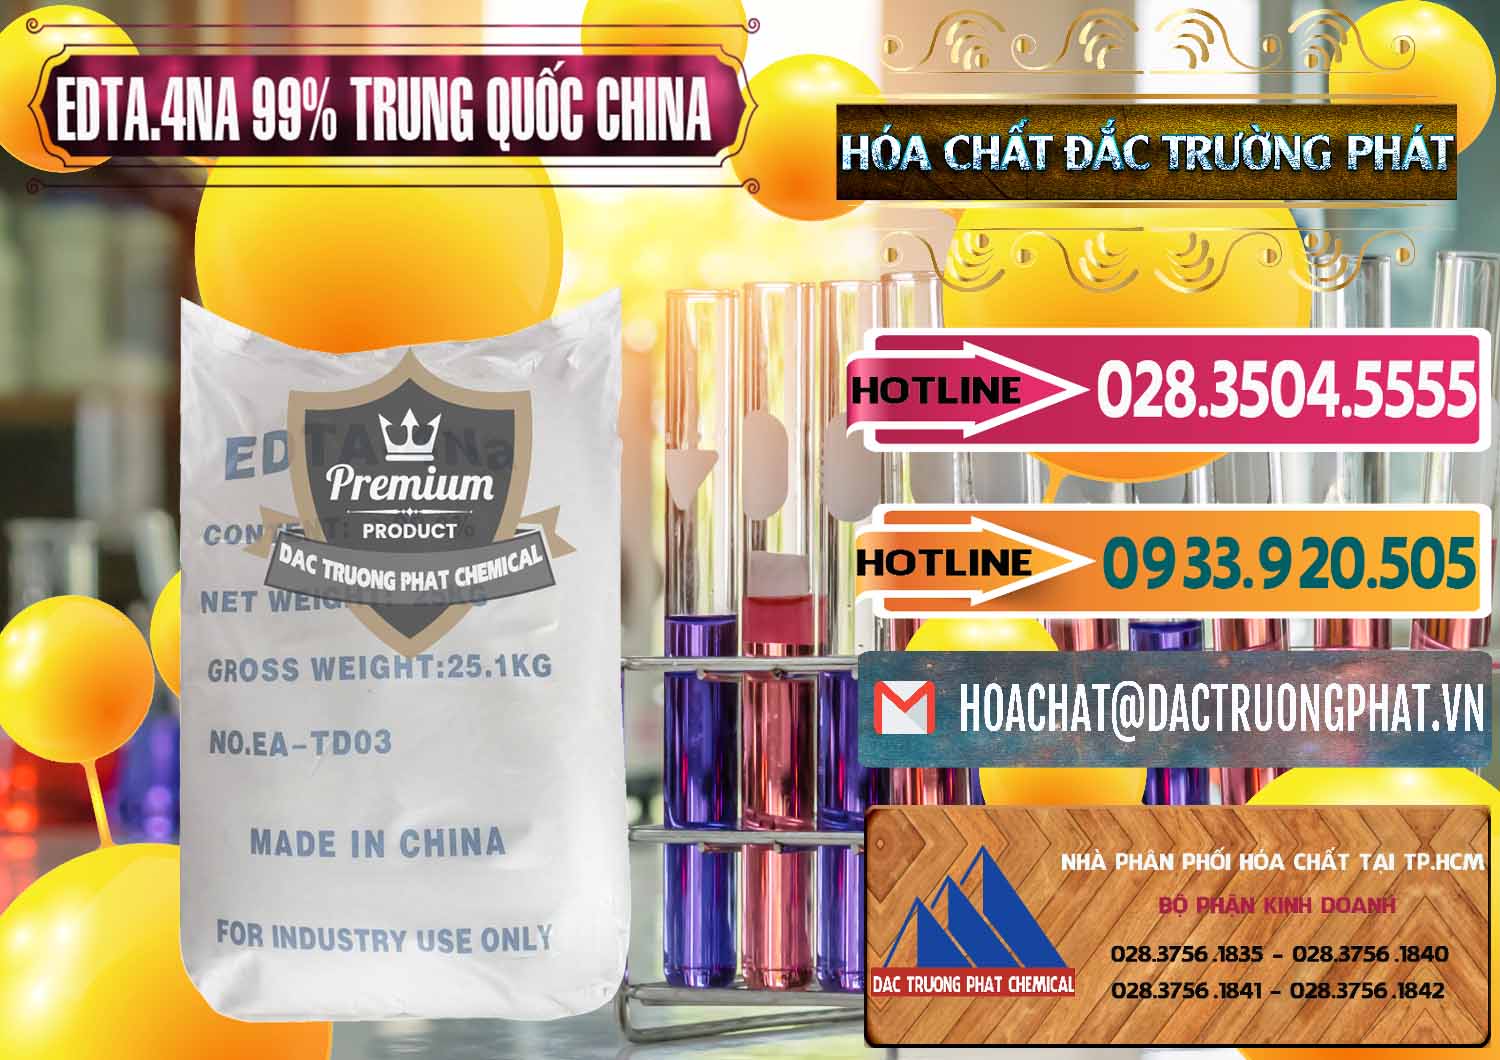 Công ty bán _ cung ứng EDTA.4NA - EDTA Muối 99% Trung Quốc China - 0292 - Cty phân phối - cung cấp hóa chất tại TP.HCM - dactruongphat.vn